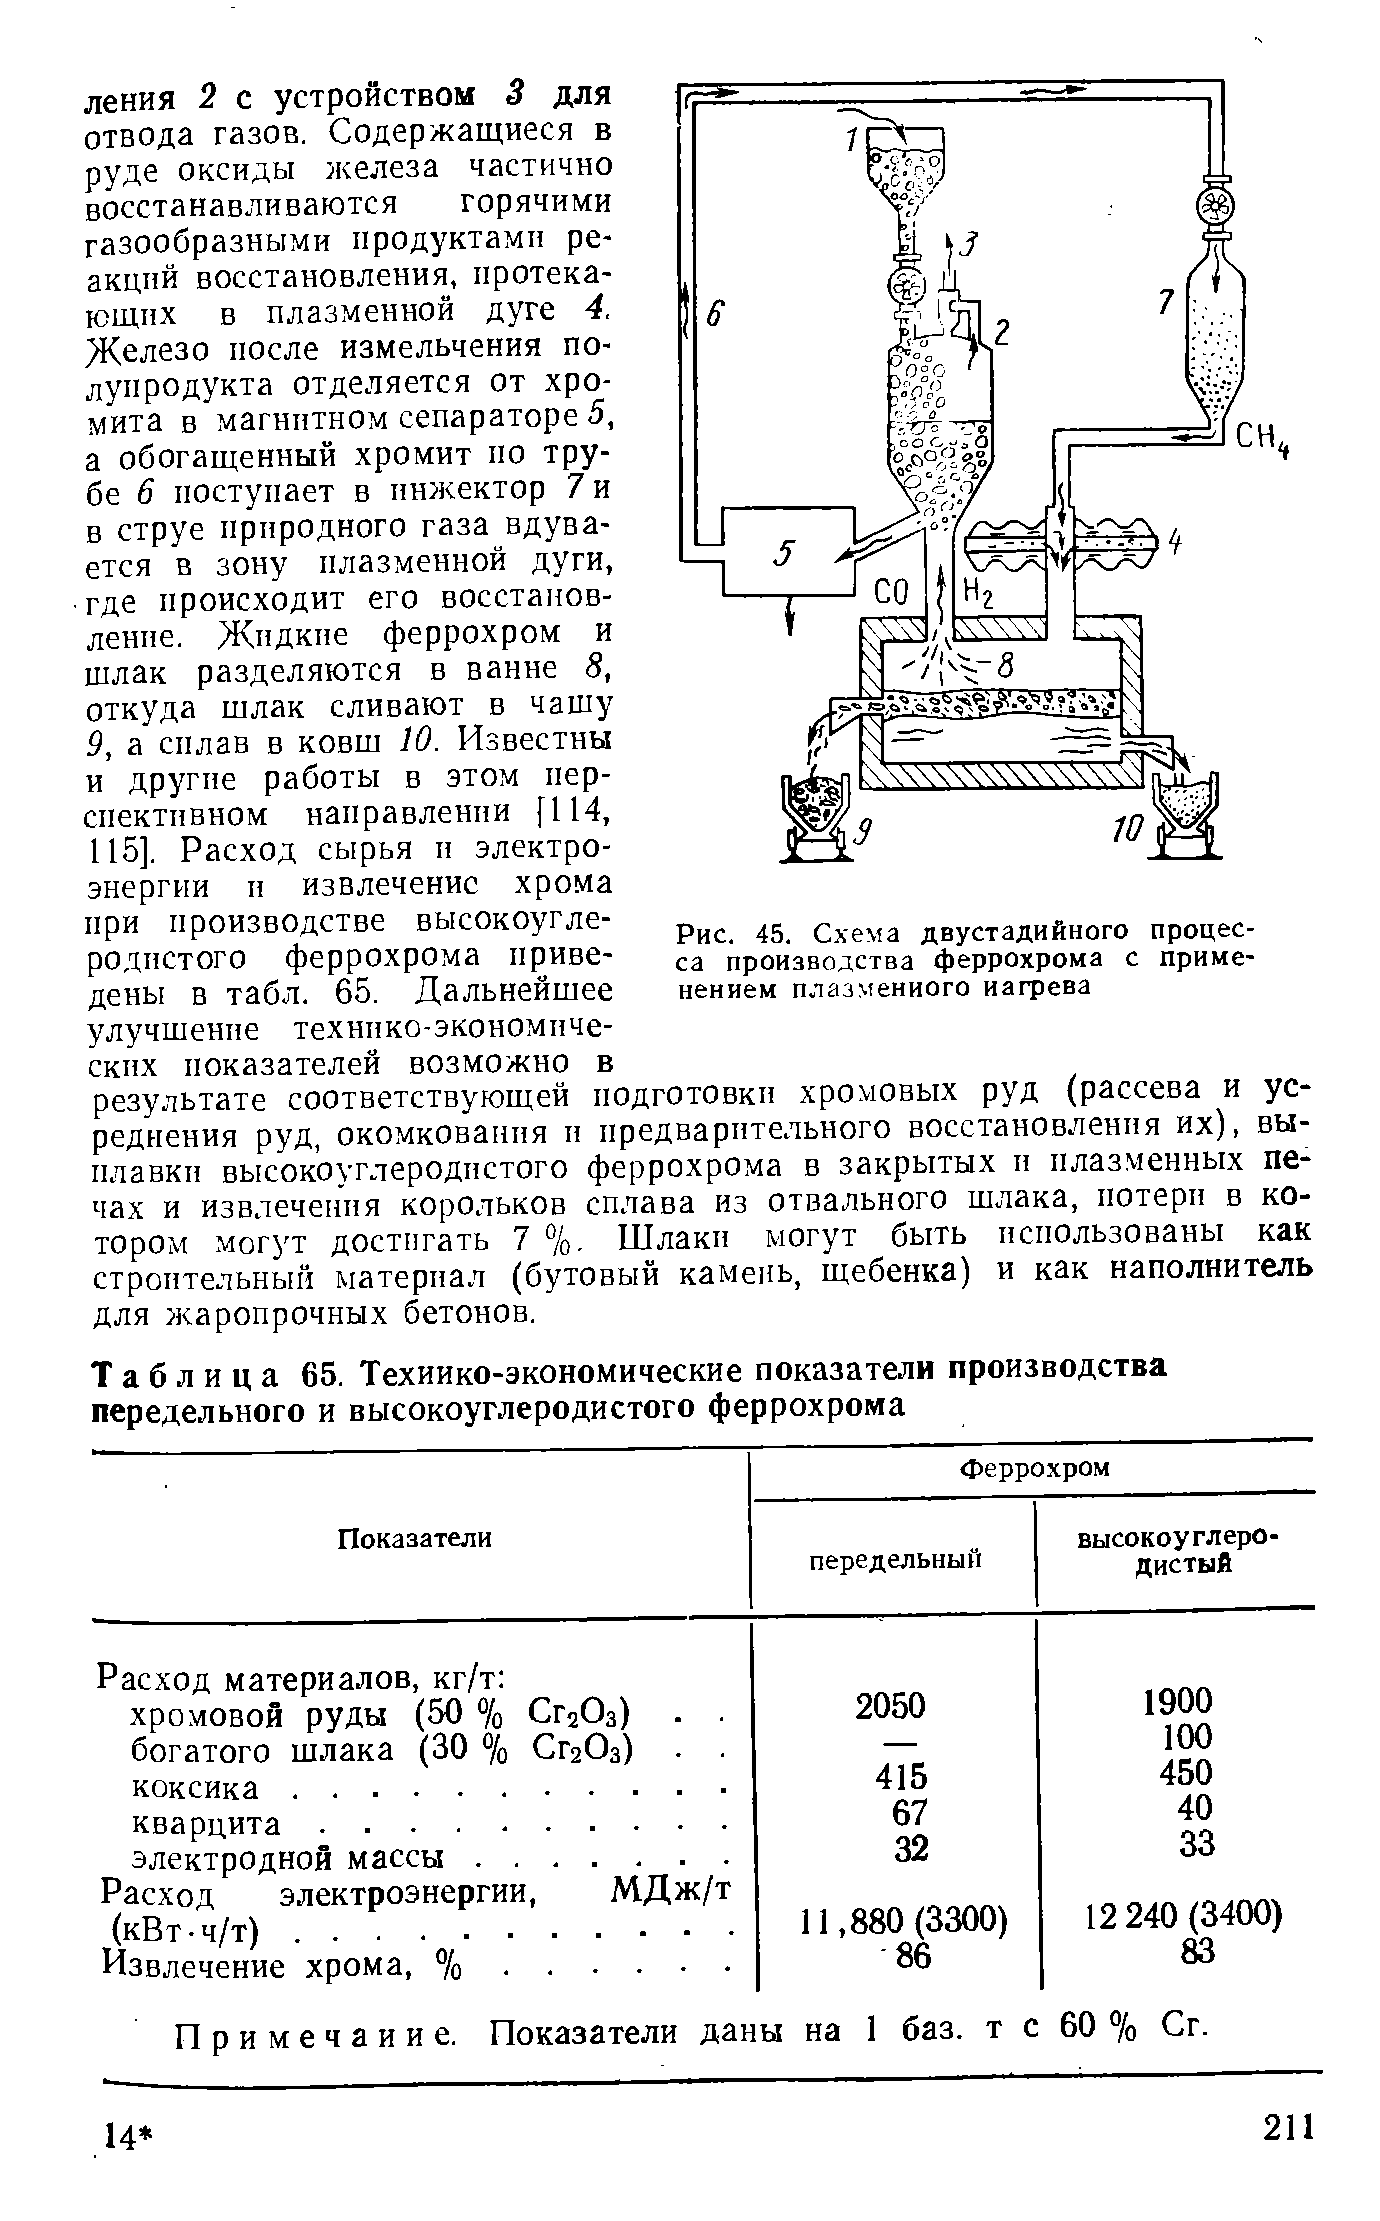 Рис. 45. Схема двустадийного процесса производства феррохрома с применением плазменного нагрева
